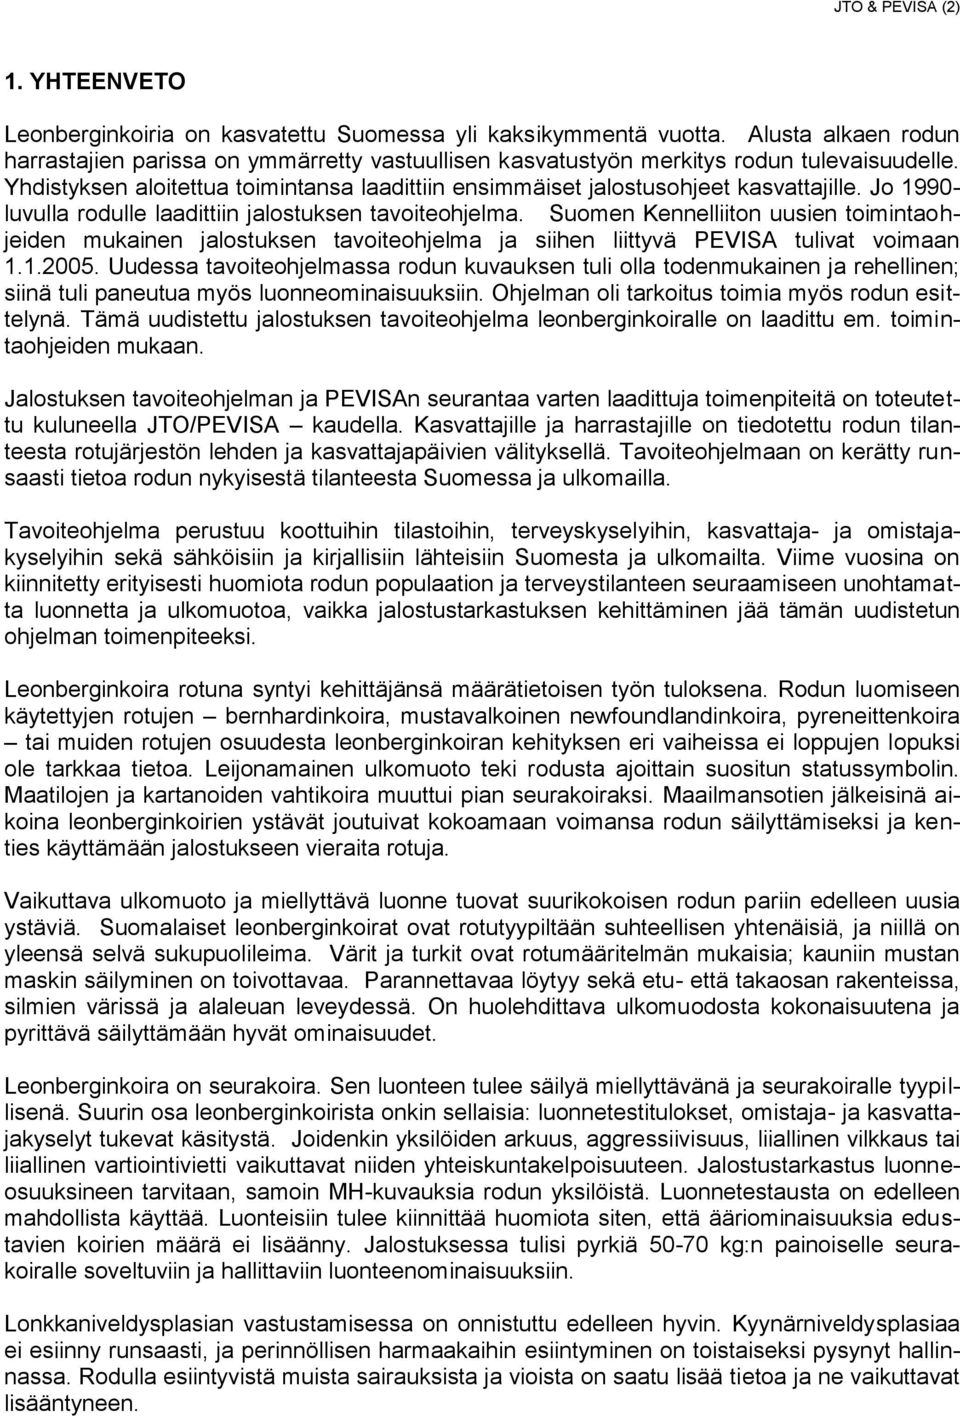 Jo 1990- luvulla rodulle laadittiin jalostuksen tavoiteohjelma. Suomen Kennelliiton uusien toimintaohjeiden mukainen jalostuksen tavoiteohjelma ja siihen liittyvä PEVISA tulivat voimaan 1.1.2005.